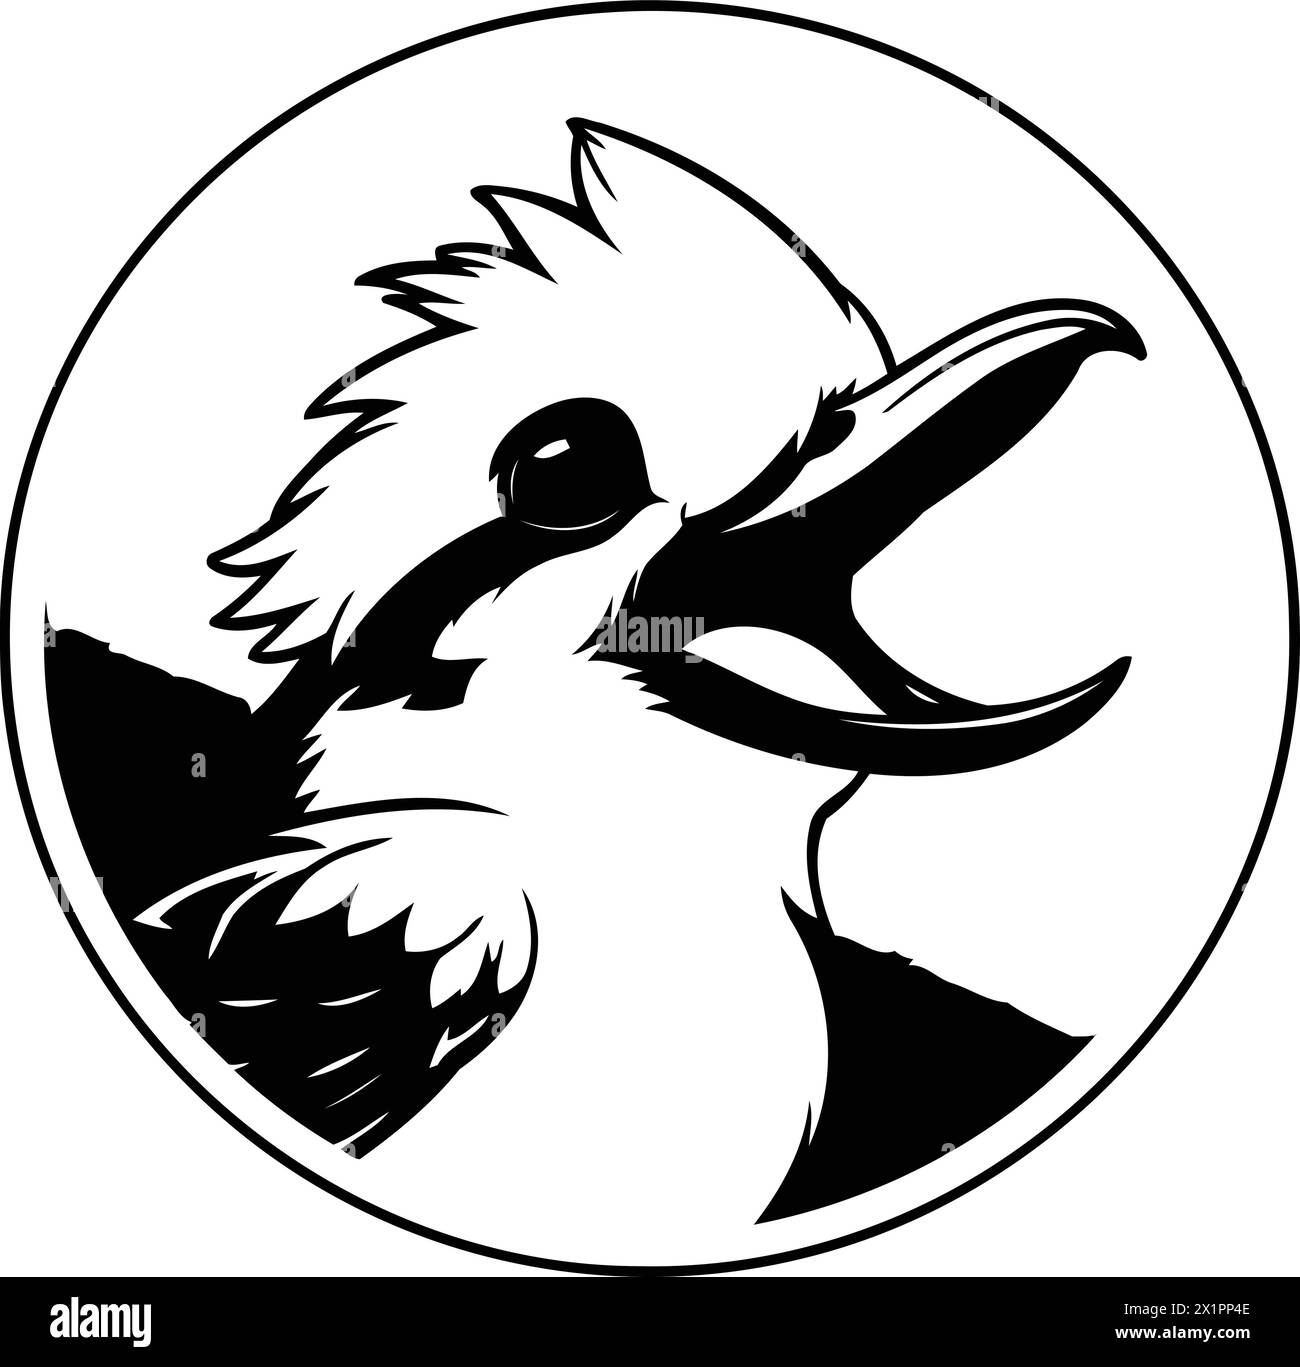 Cartoon kookaburra. vector illustration on white background Stock Vector